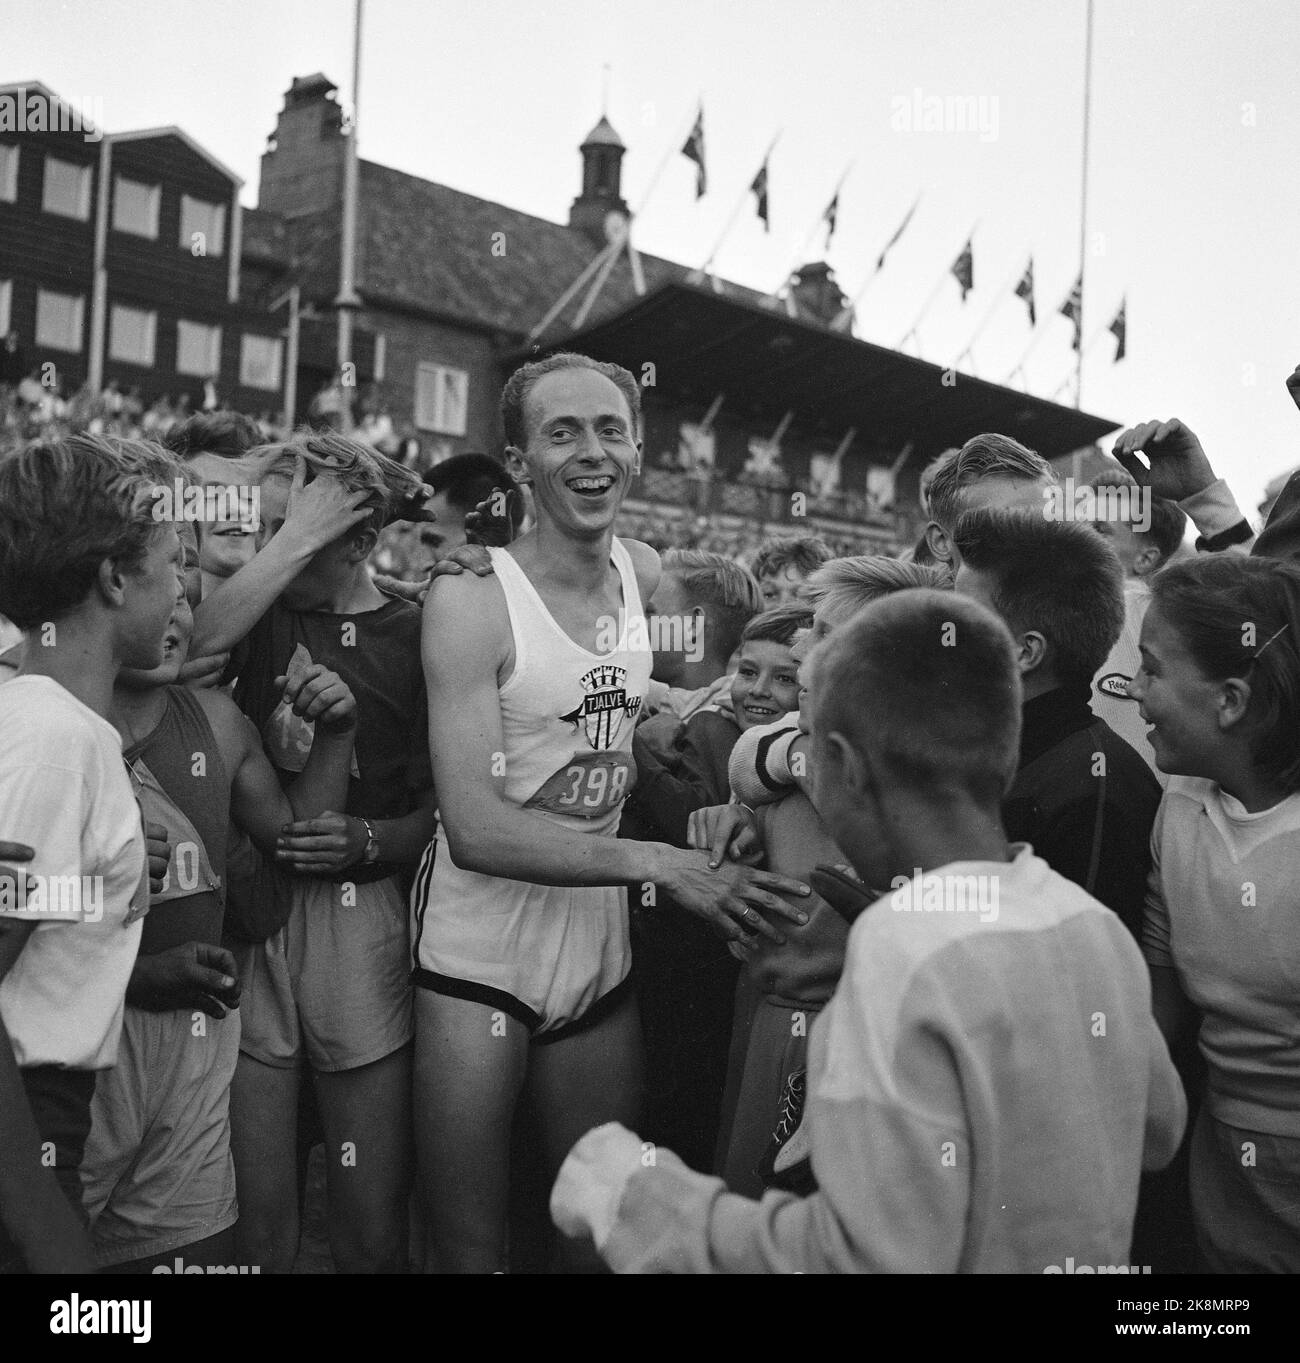 Oslo 19550825 Athletics Conference in Bislett, und wie immer steht Audun Boysen im Mittelpunkt. Hier ein lächelnder boysen, umgeben von glücklichen jungen Athleten, die zu ihrem großen Helden aufschauen. Foto: NTB / NTB Stockfoto